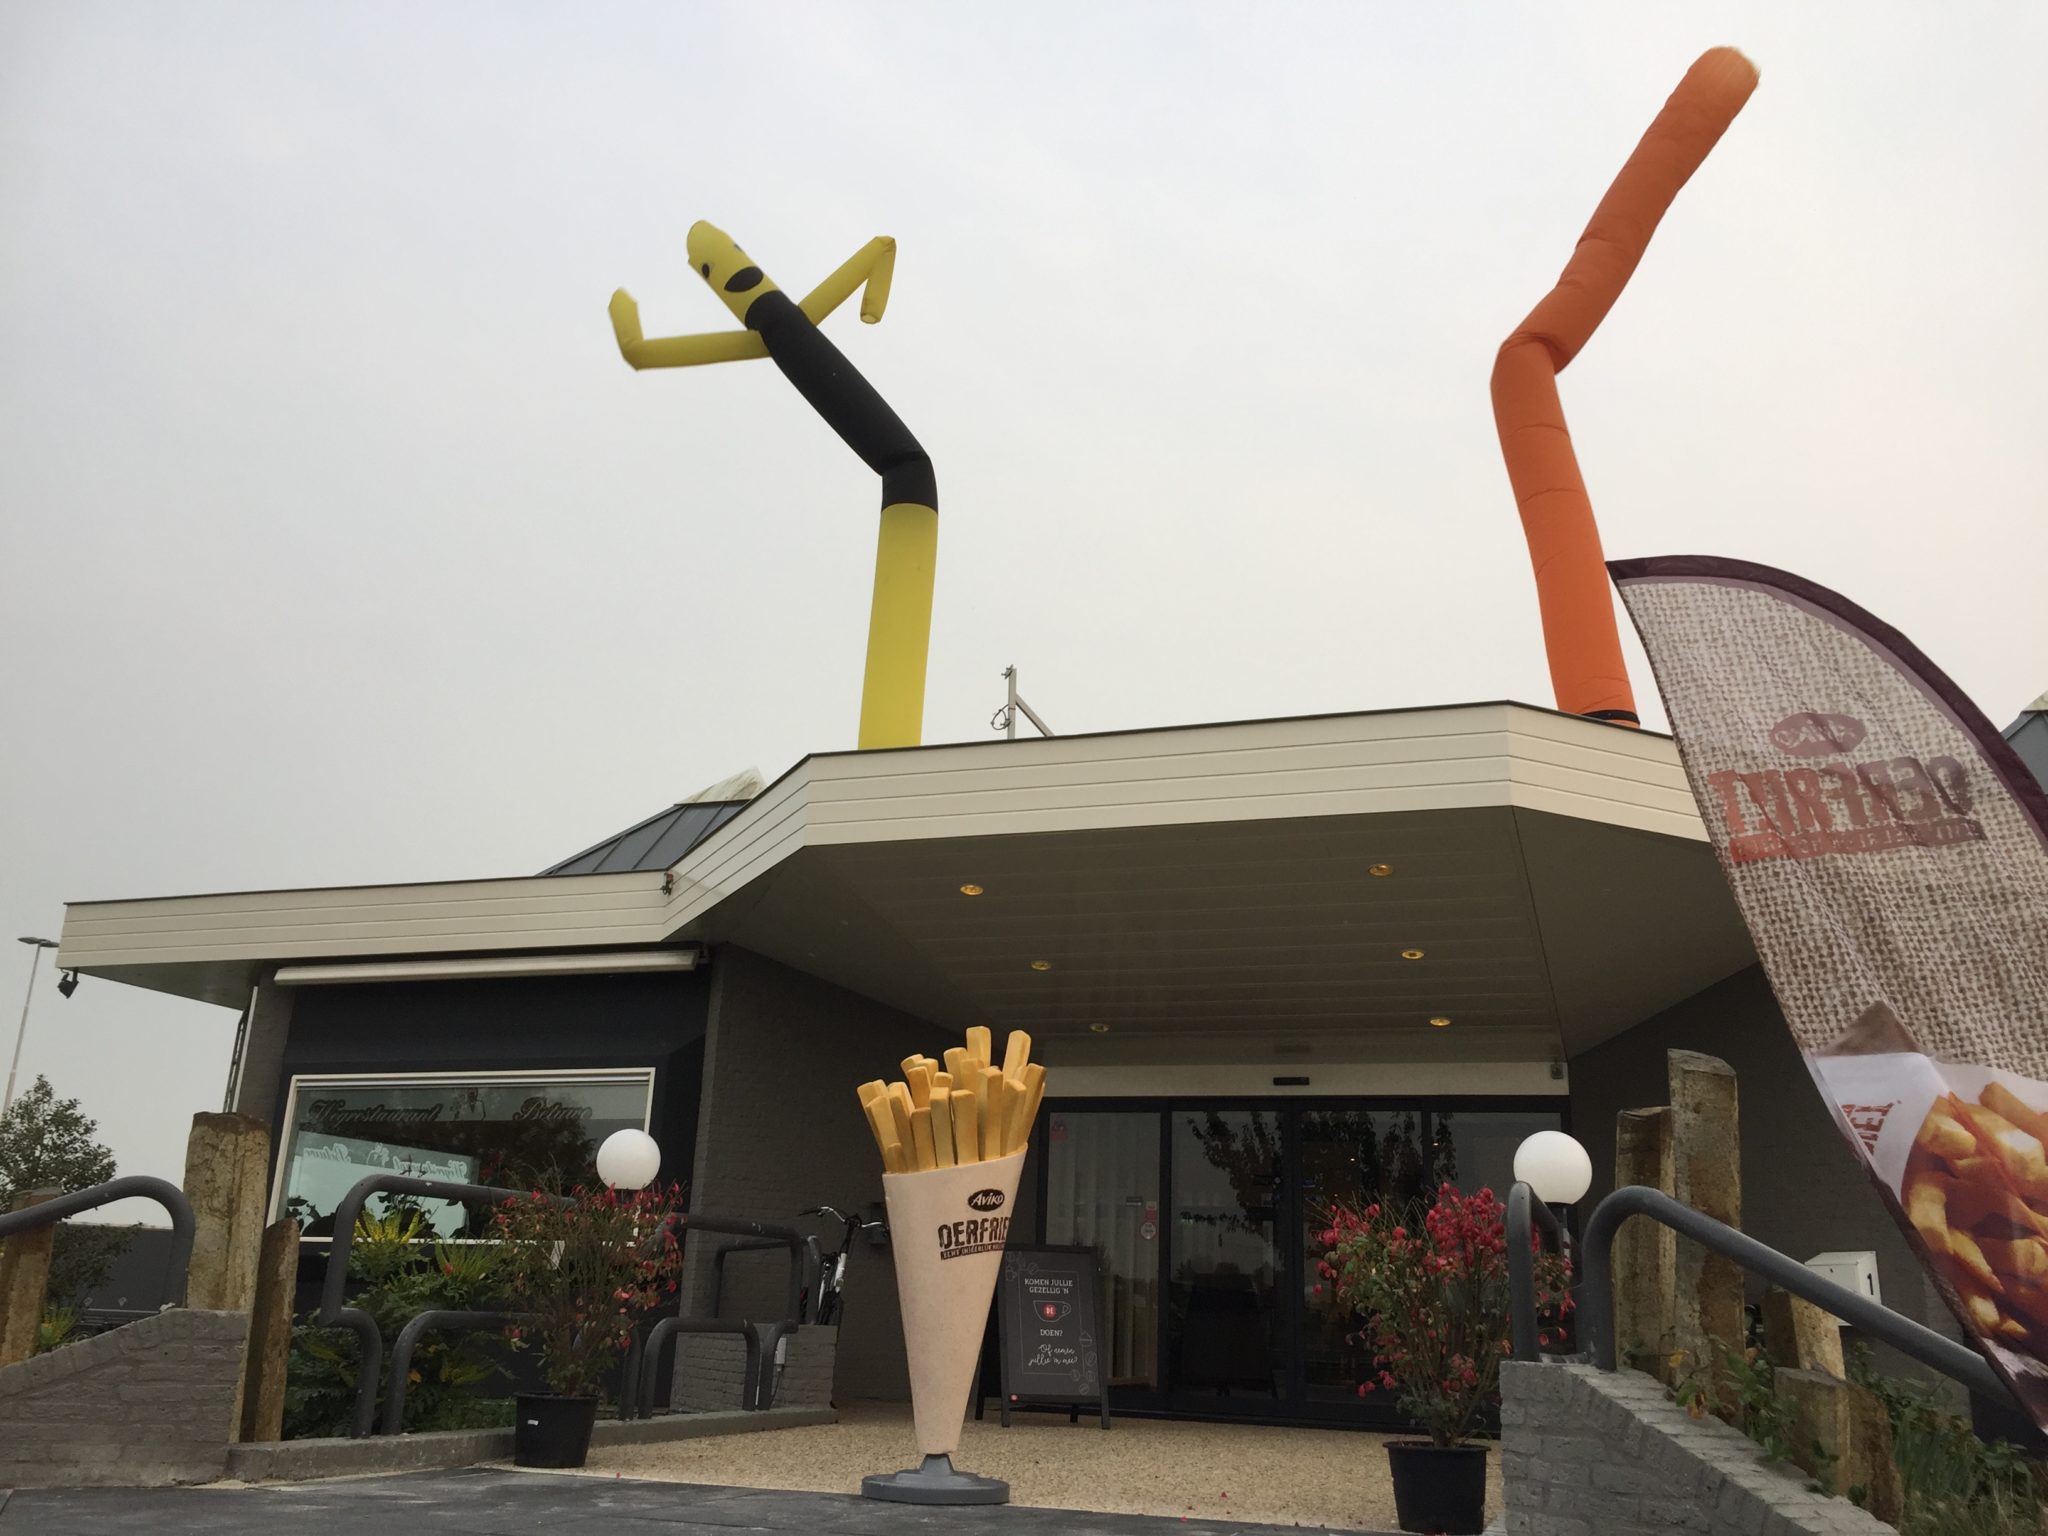 Wegrestaurant Betuwe A15 geopend